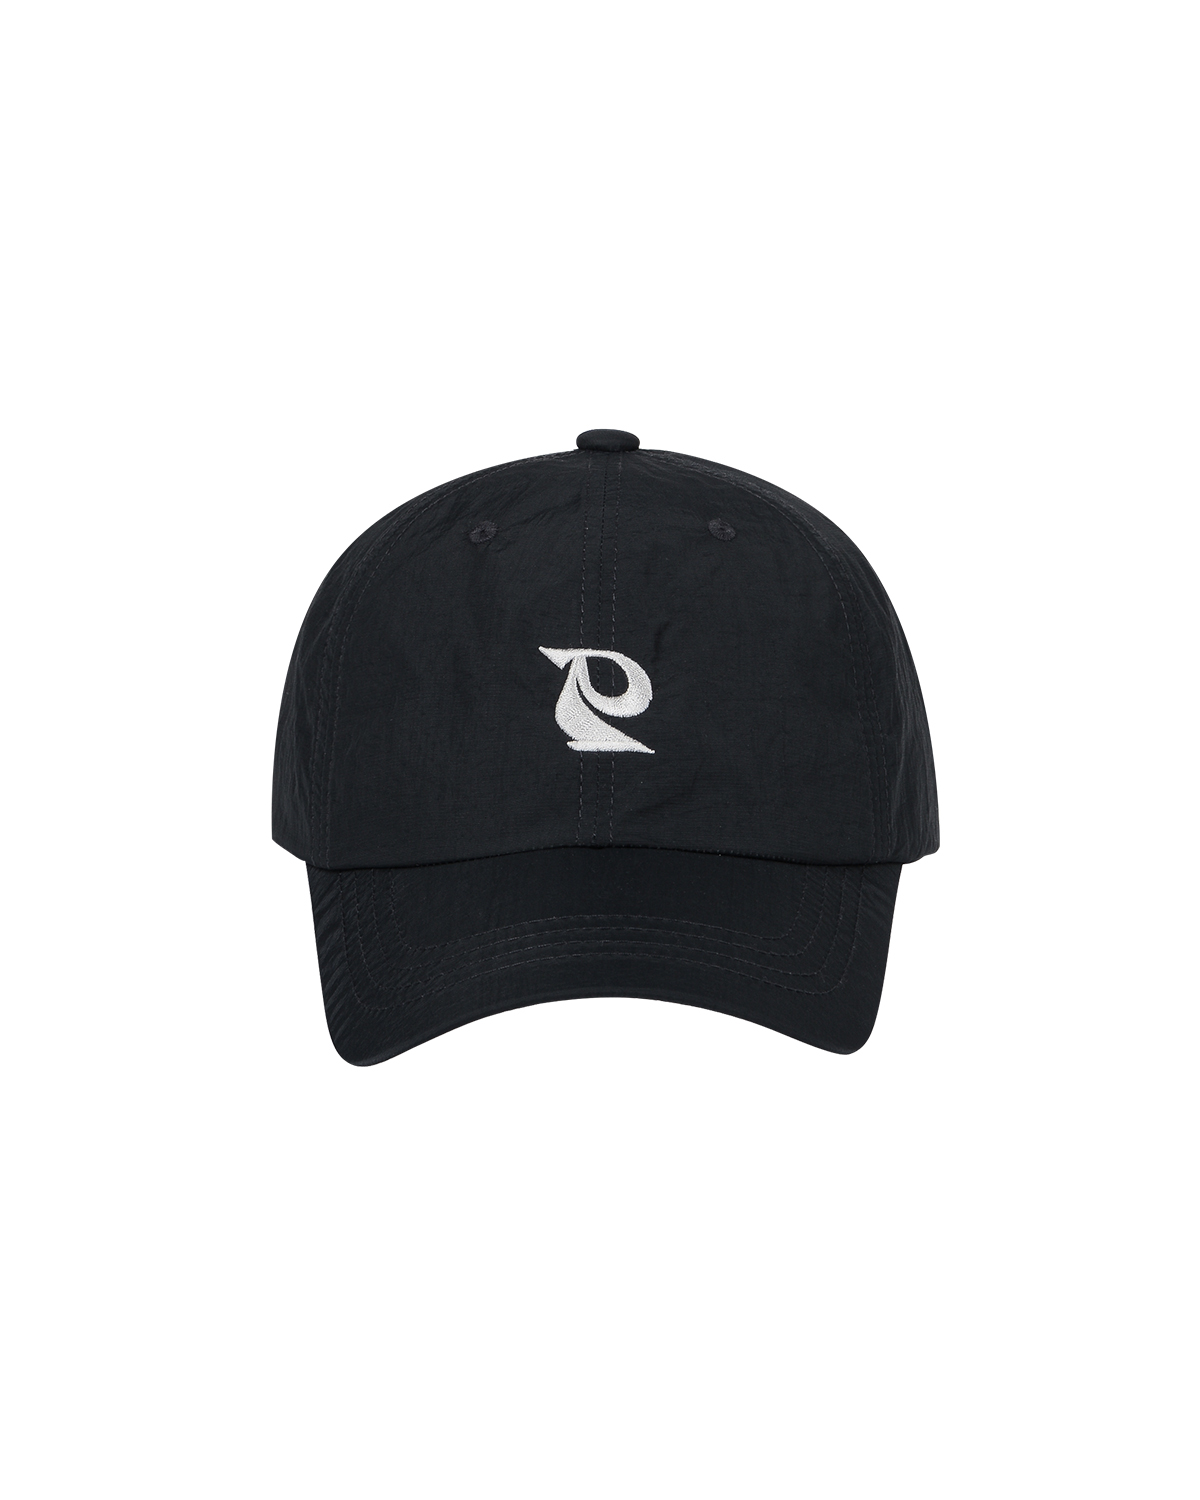 EMBLEM NYLON CAP, BLACK